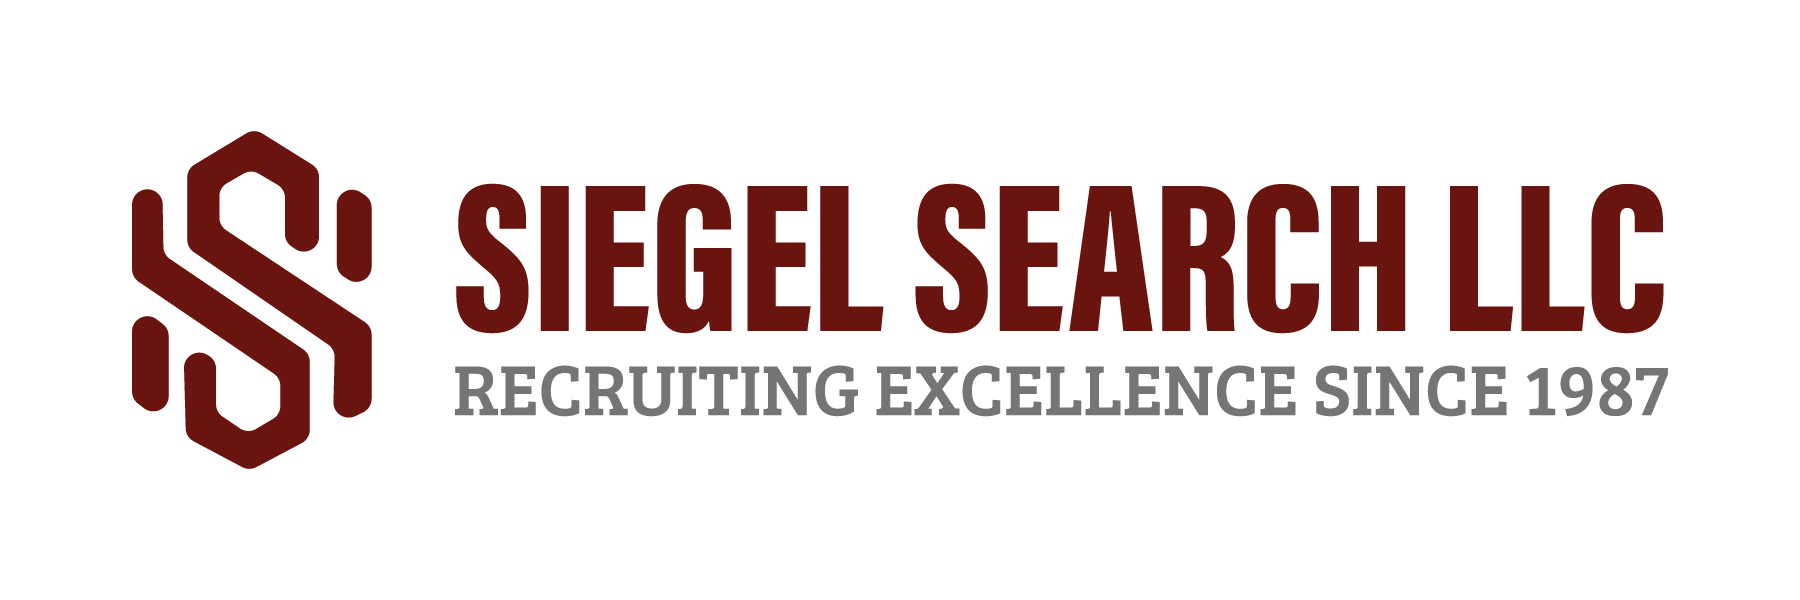 Siegel Link LLC/Siegel Search LLC